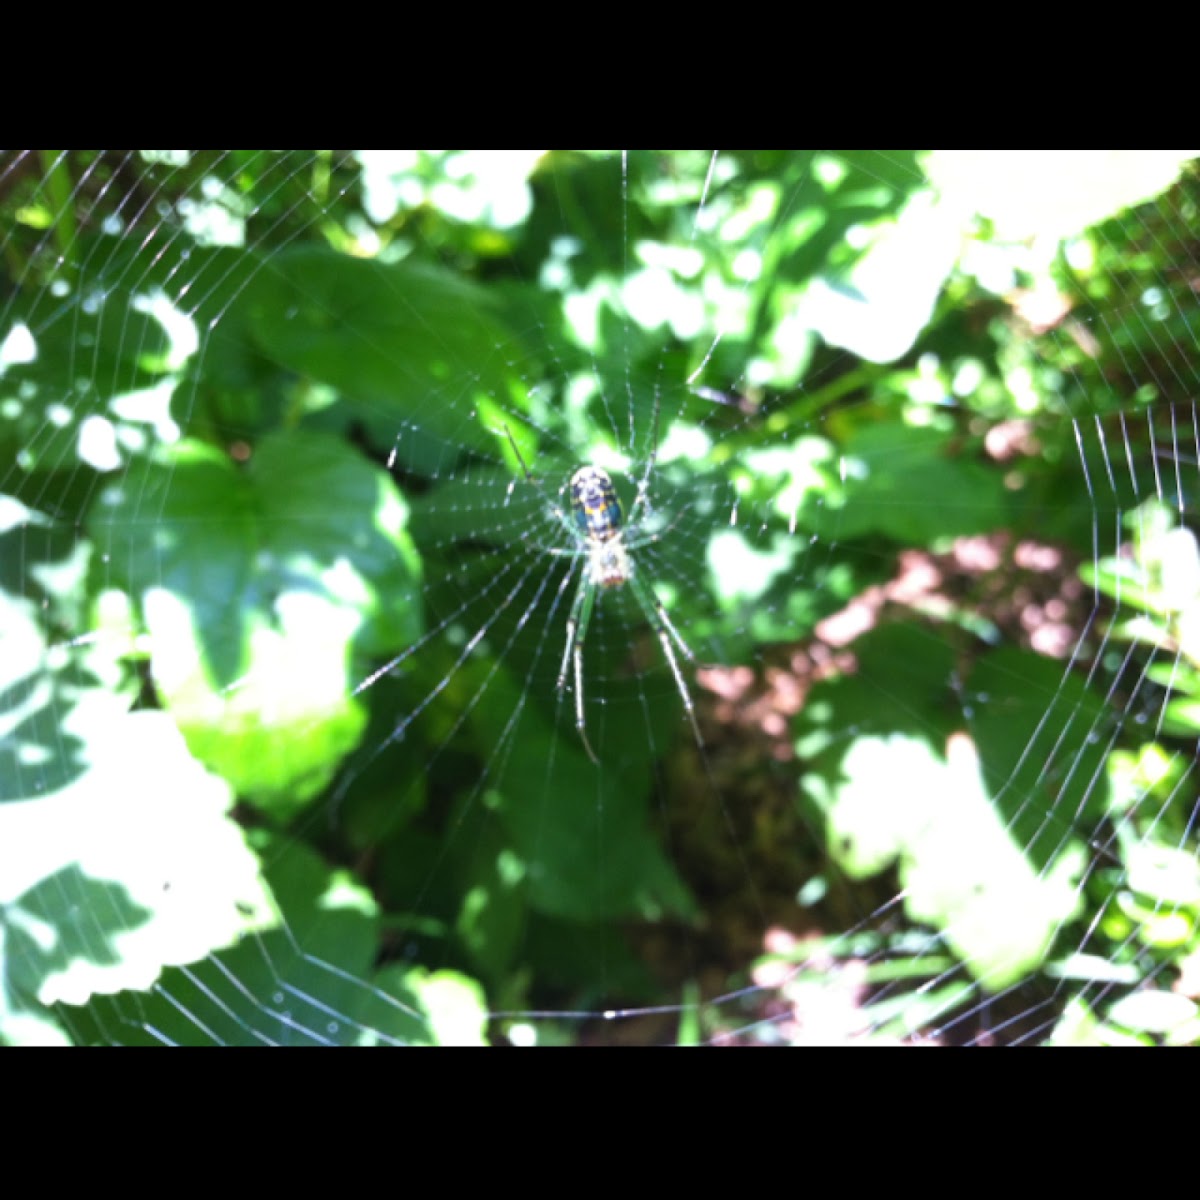 Garden spider